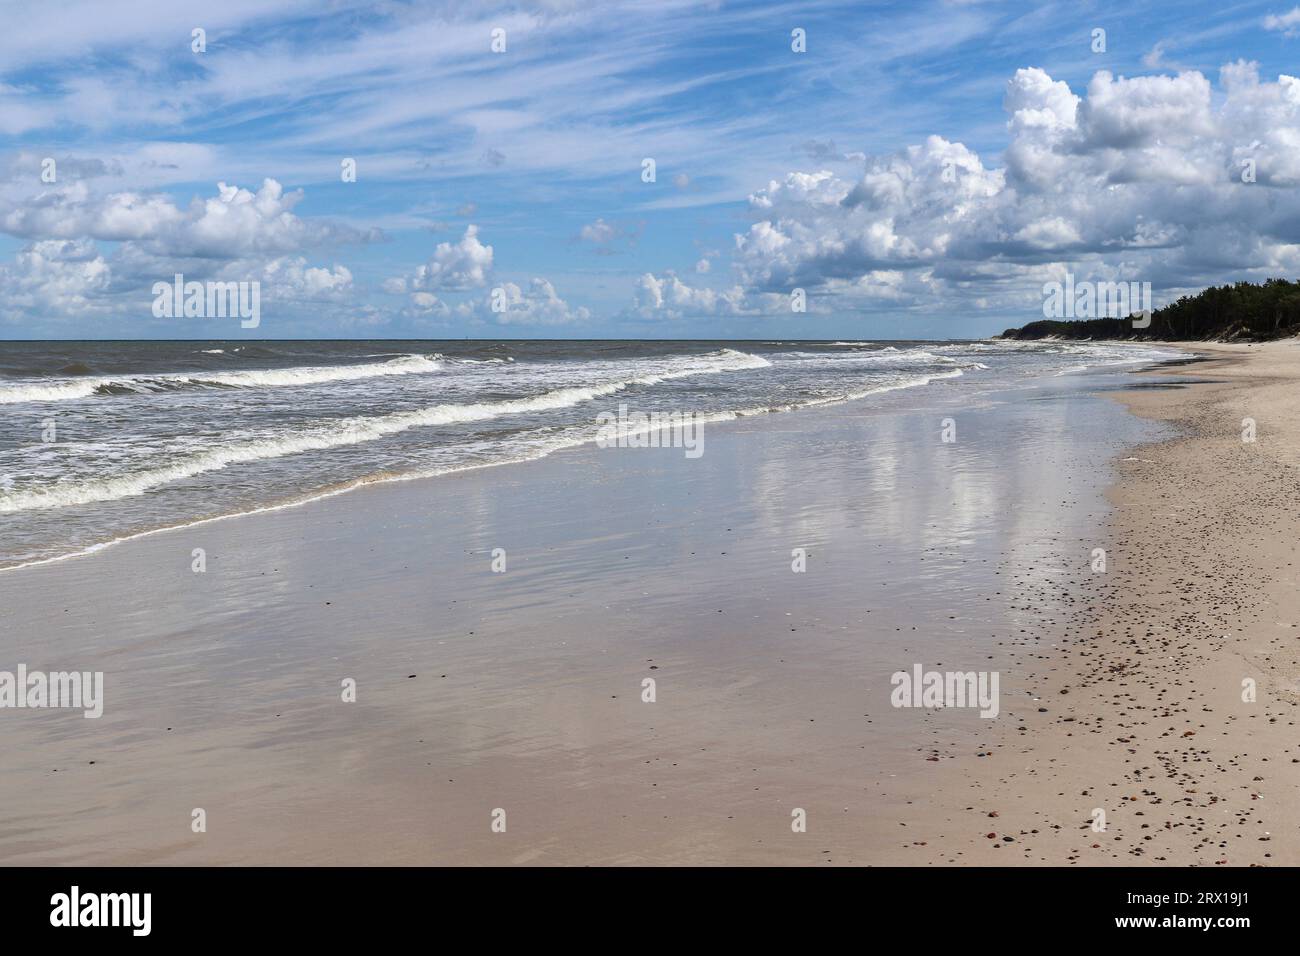 Cielo blu e nuvole bianche riflesse nella sabbia bagnata di una spiaggia sulla costa del Mar Baltico in Polonia Foto Stock